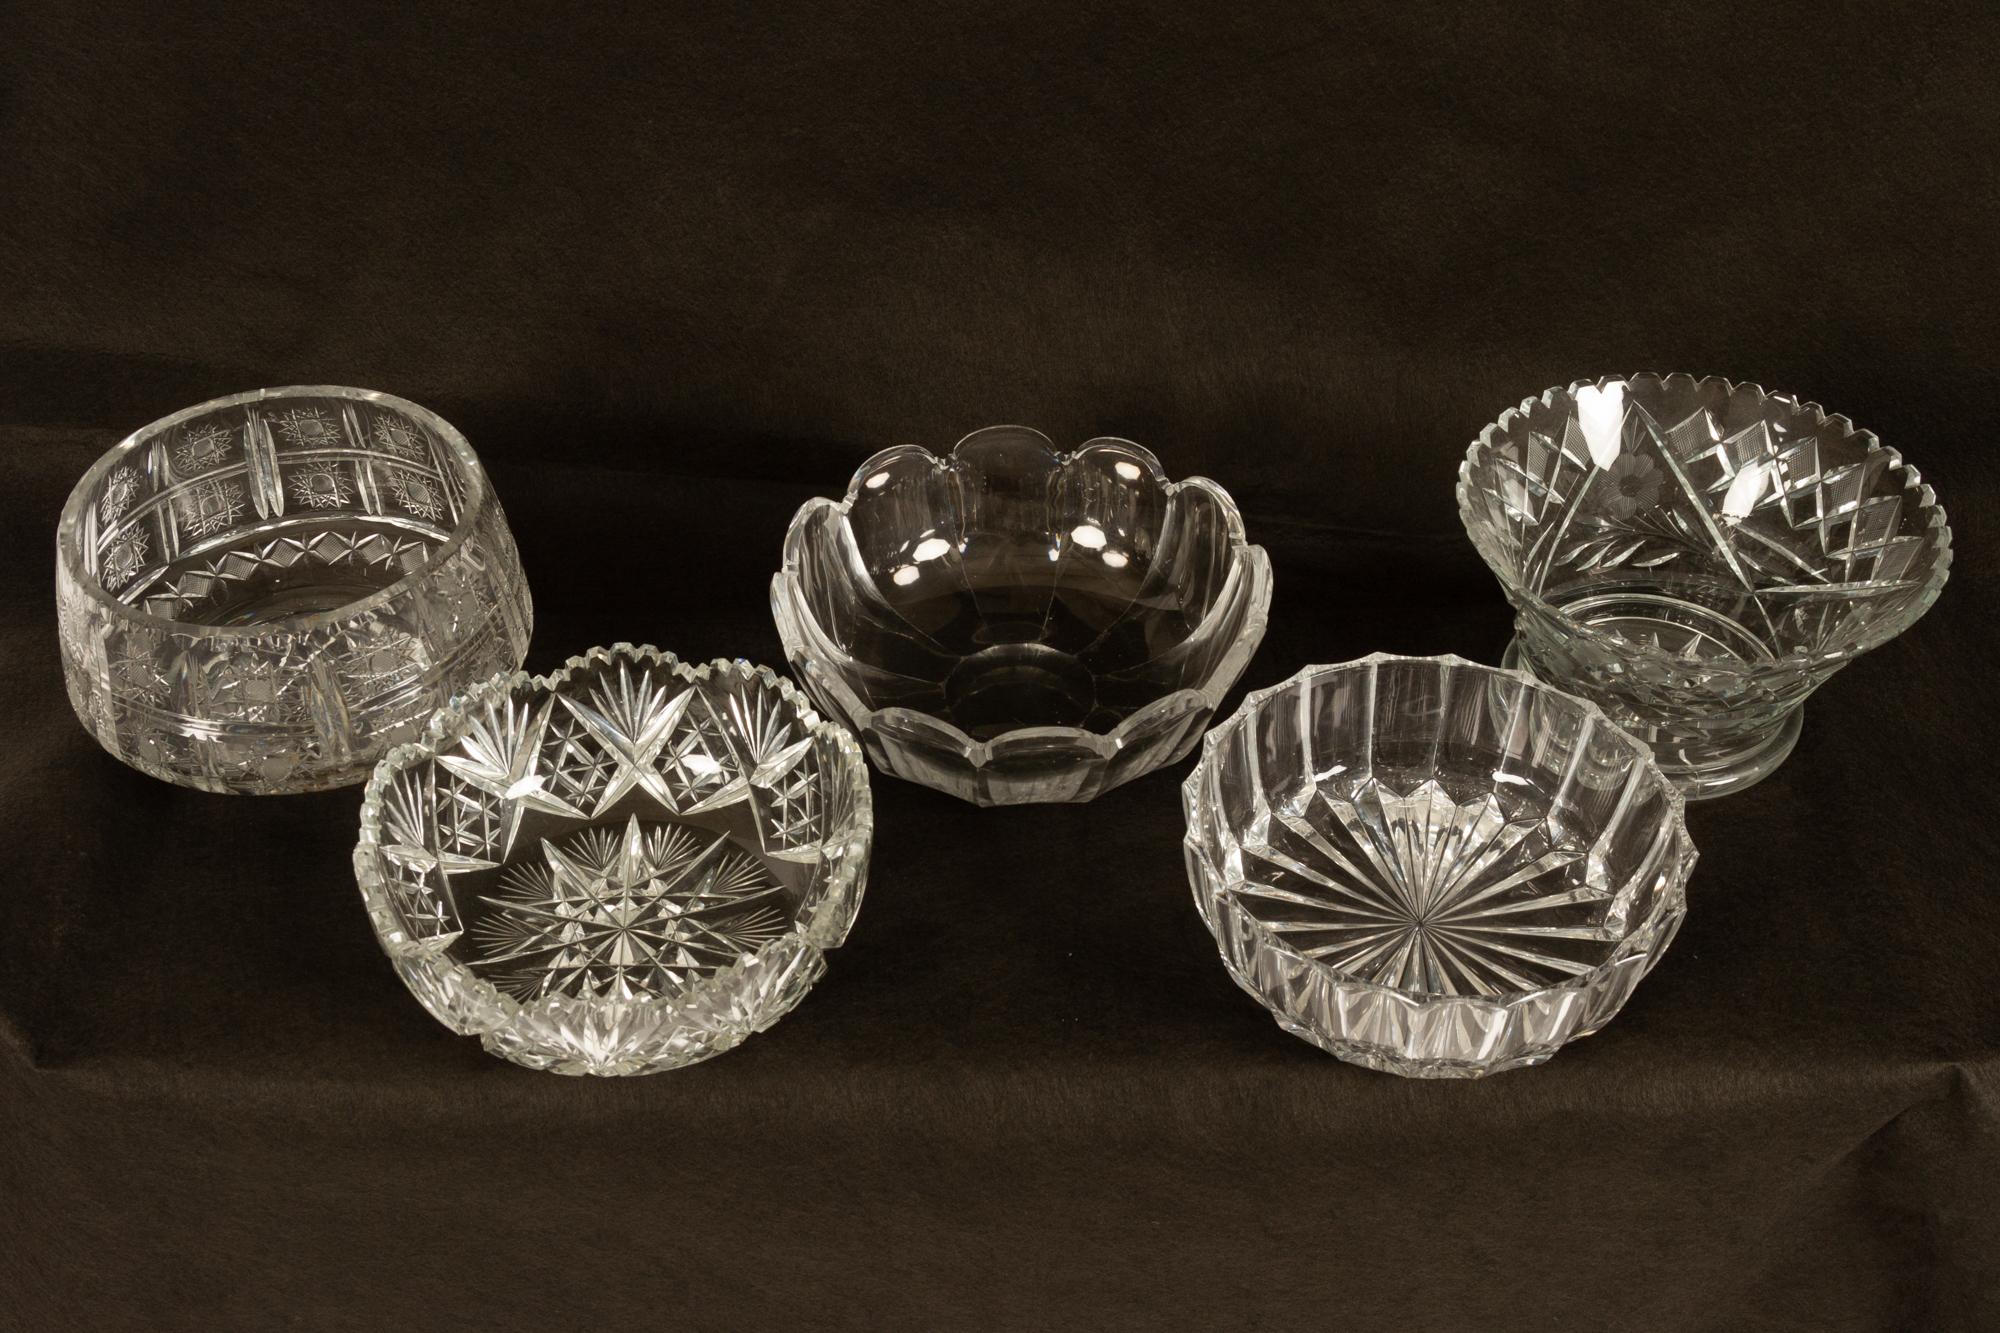 Cinq magnifiques bols en cristal de différentes tailles.
Mesurant entre 21 et 31 cm de largeur.
Tous en bon état, sans éclats ni fissures.